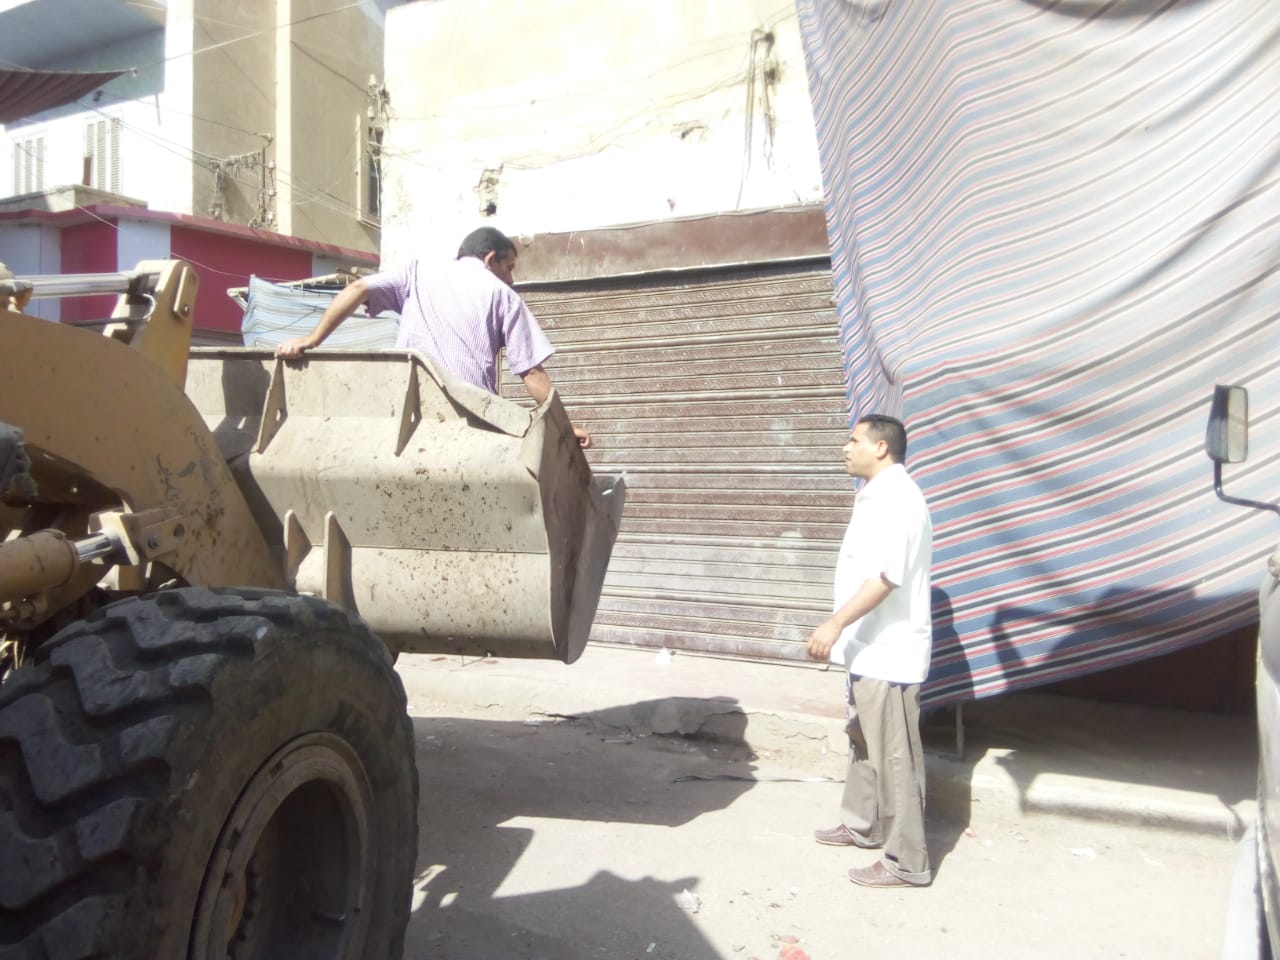 رفع وإزالة  392 حالة إشغال متنوعة في حملة مكبرة بمدينة الفشن (3)